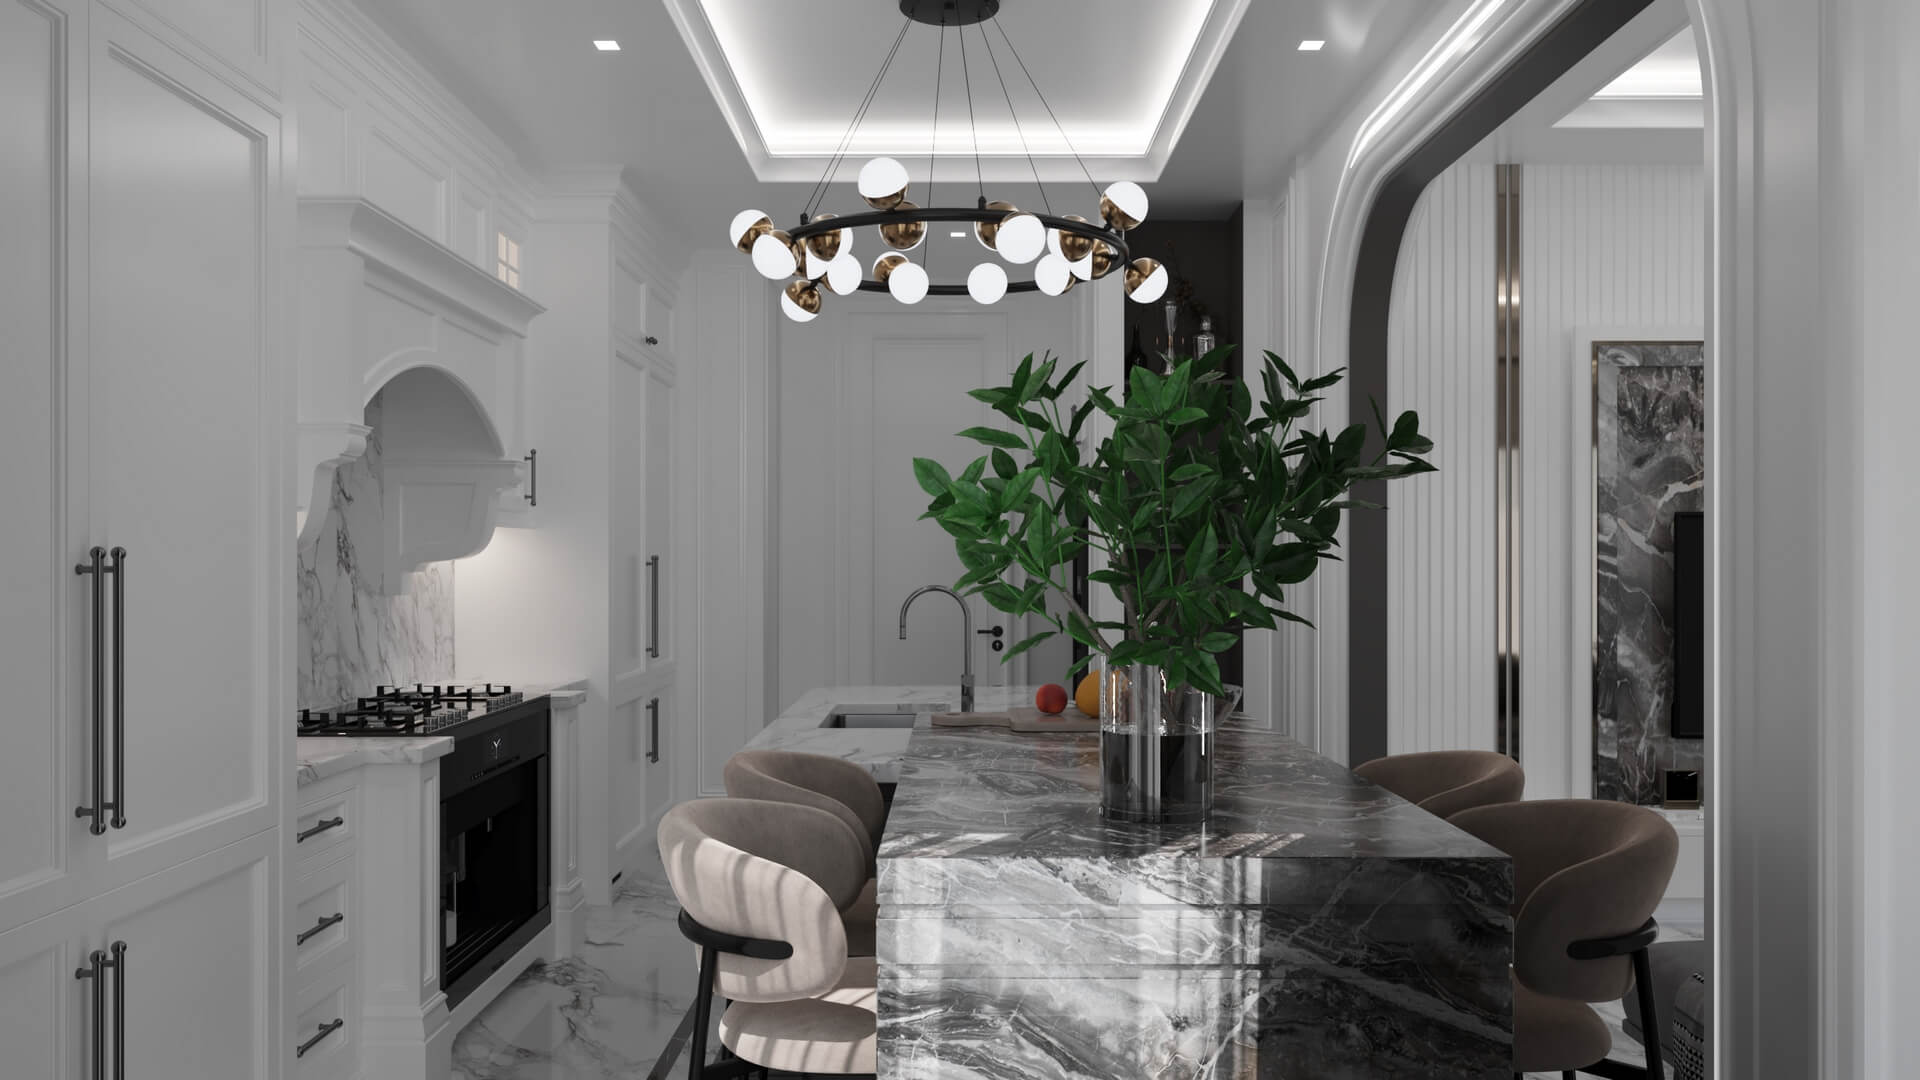  villa dekorasyonu 5166 Dubleks Apartman Dairesi Tasarımı Konutlar